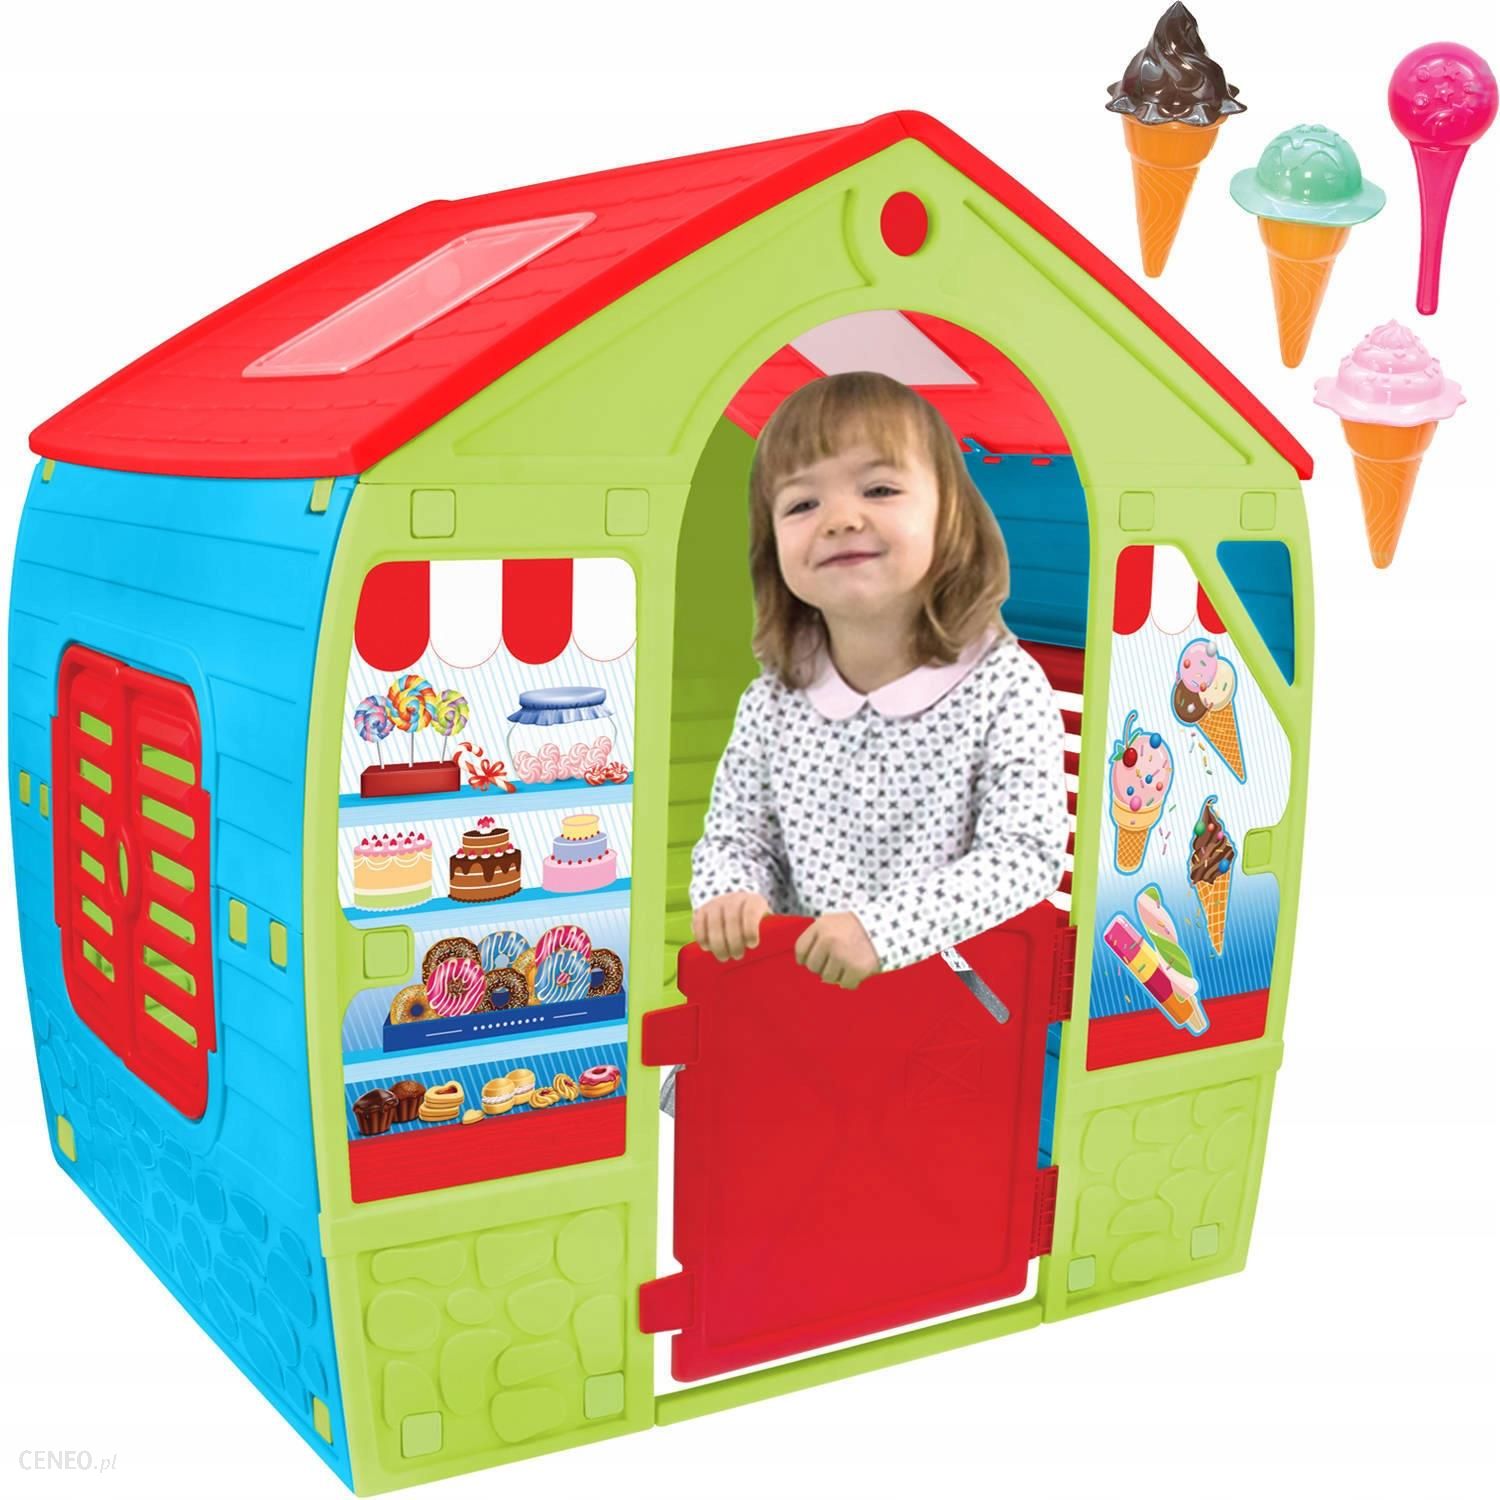 Mochtoys Domek dla dzieci cukiernia Candy Shop 12153